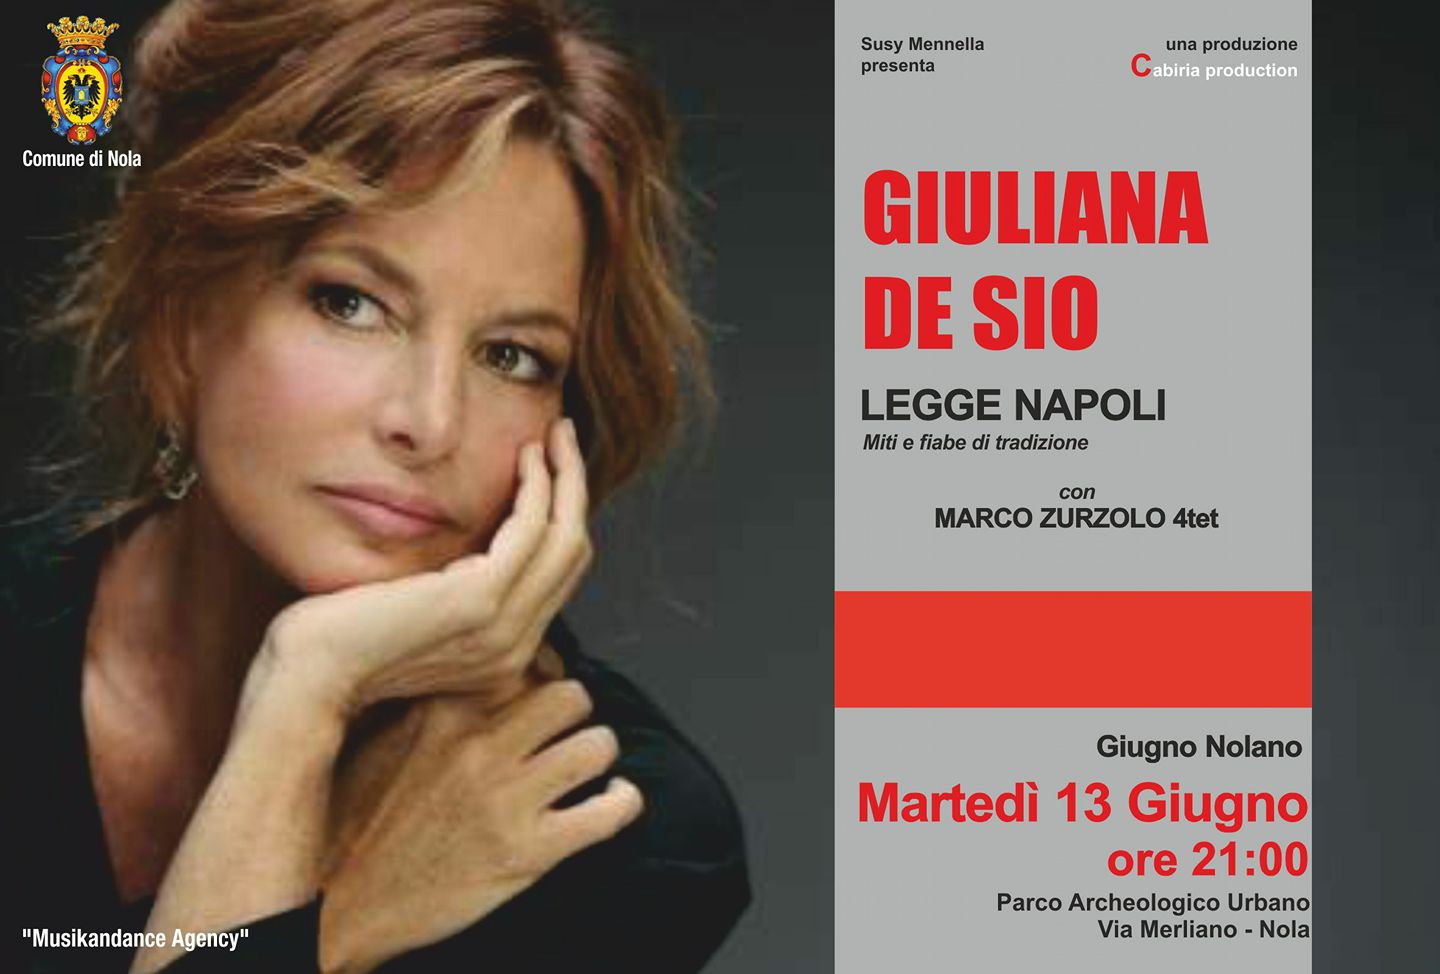 Nola: “Giuliana De Sio legge Napoli”